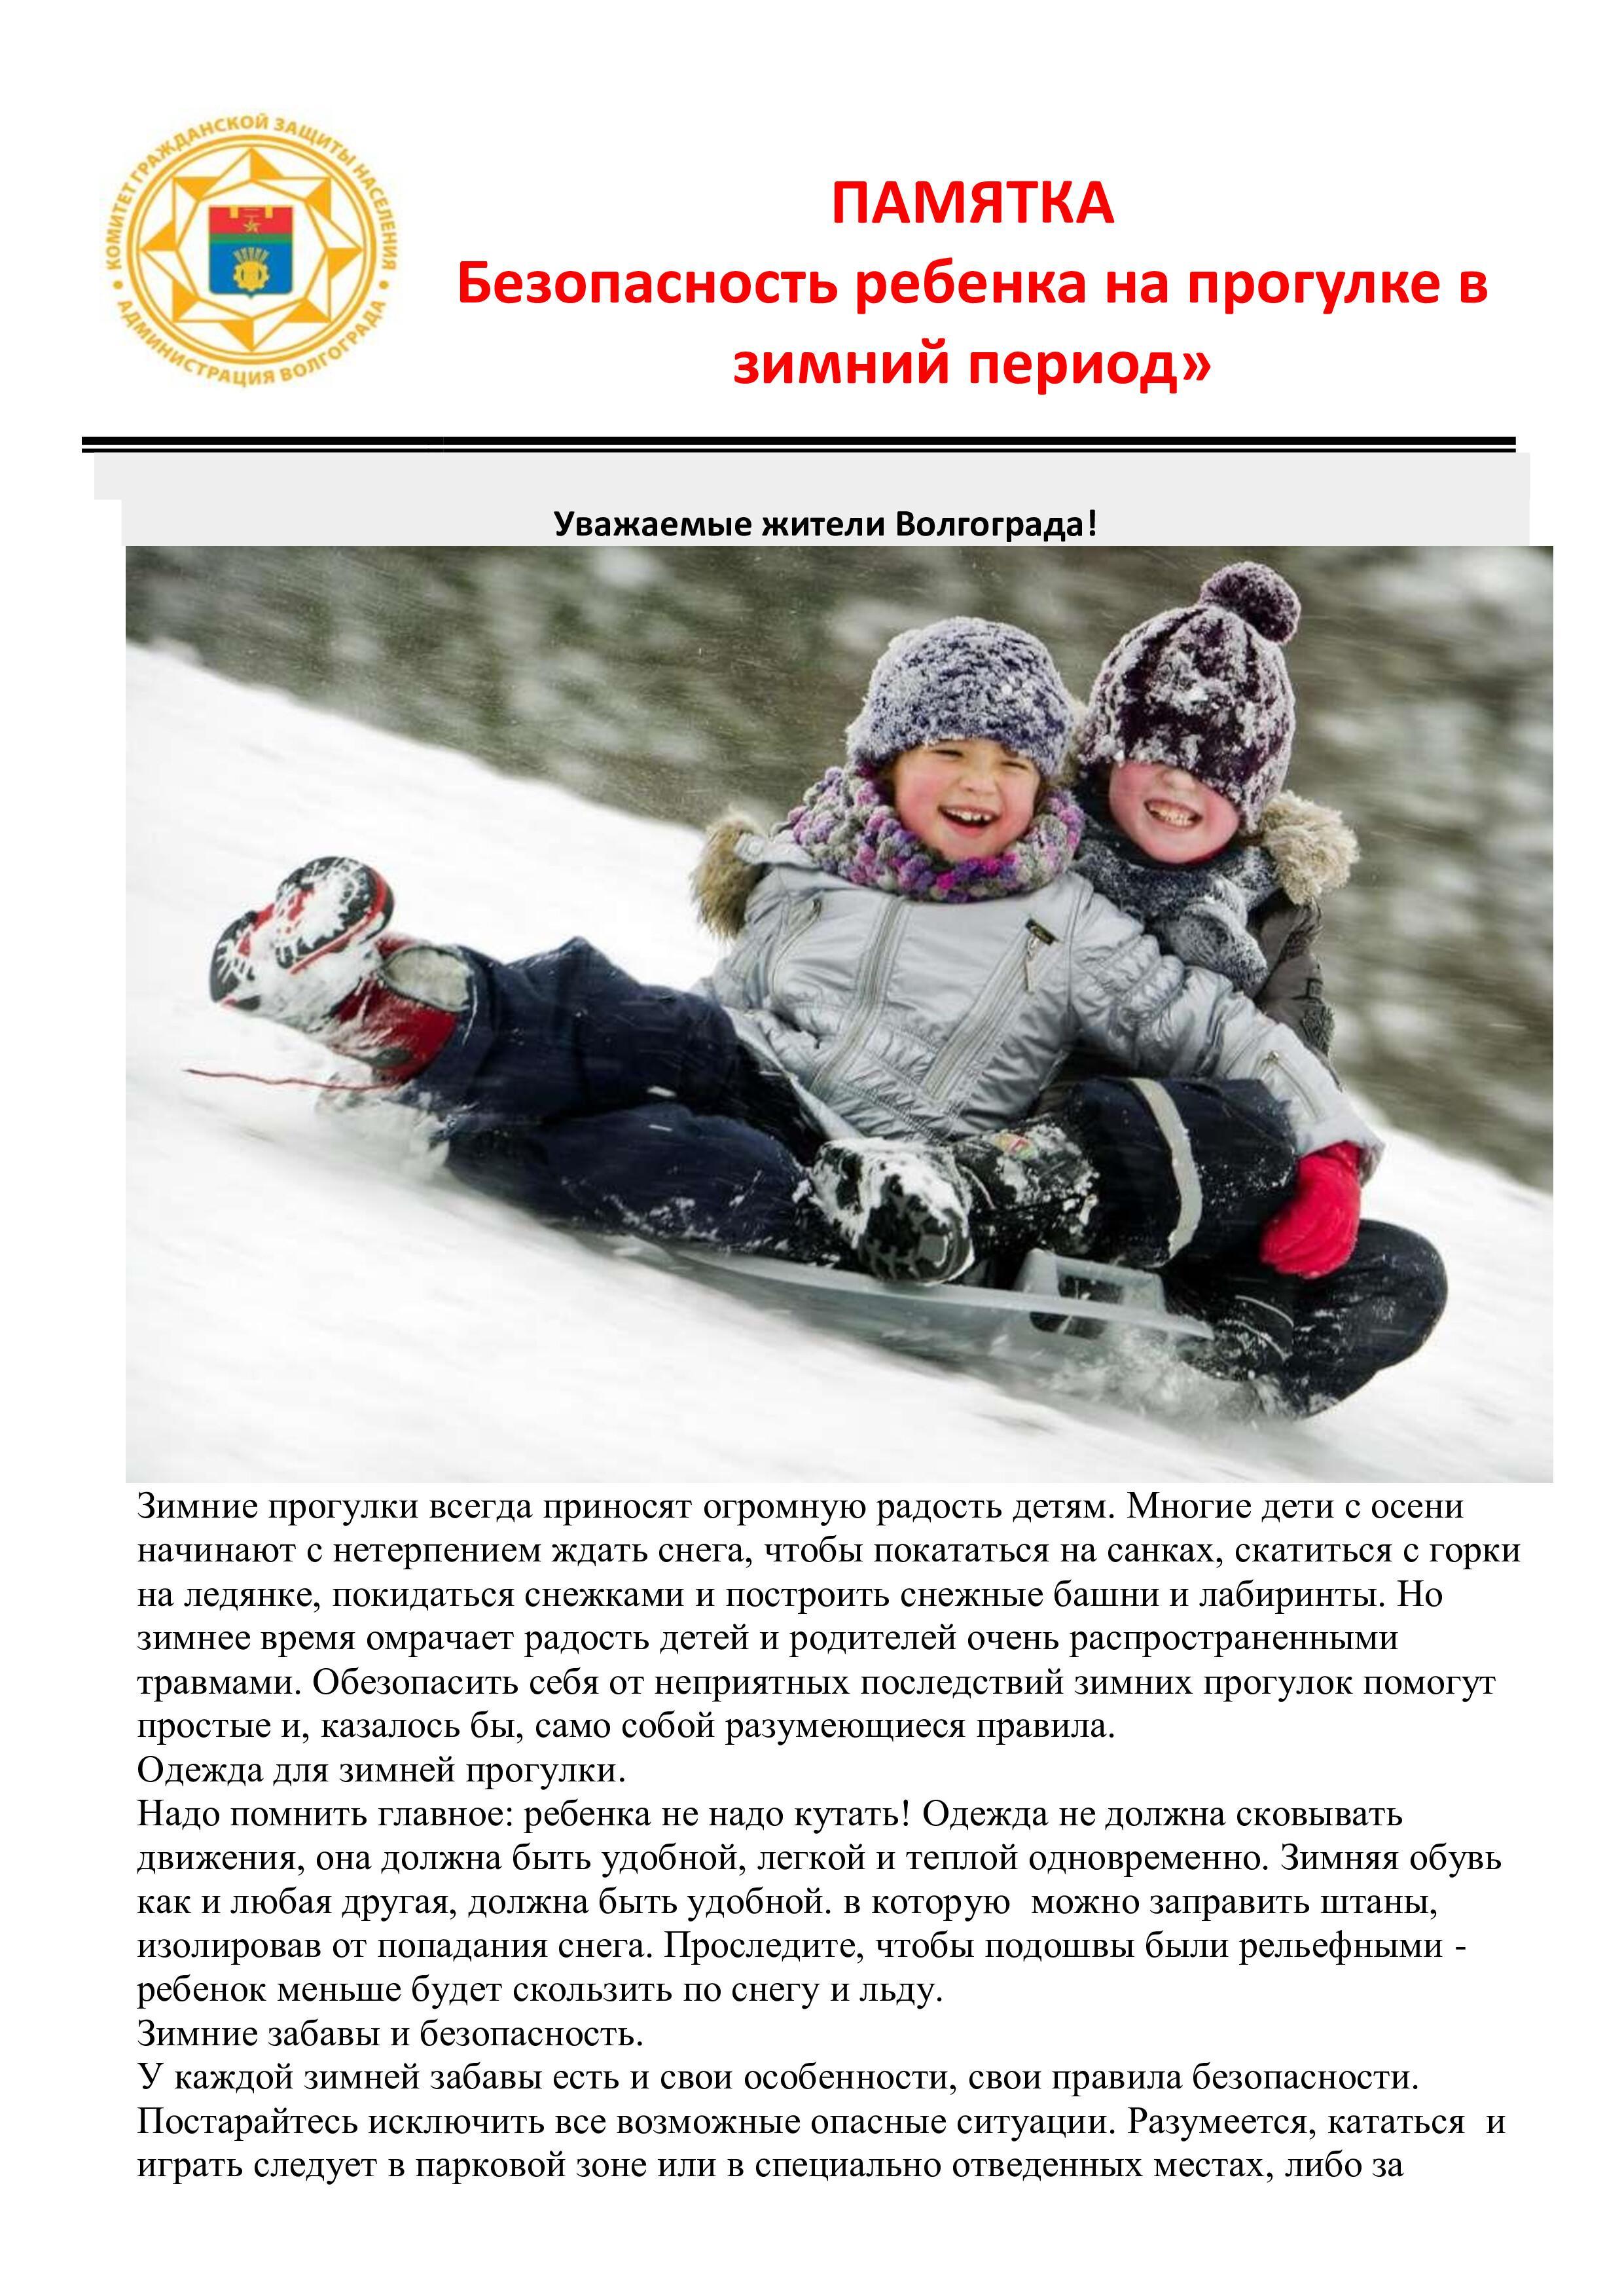 Безопасность ребенка на прогулке в зимний период (1)